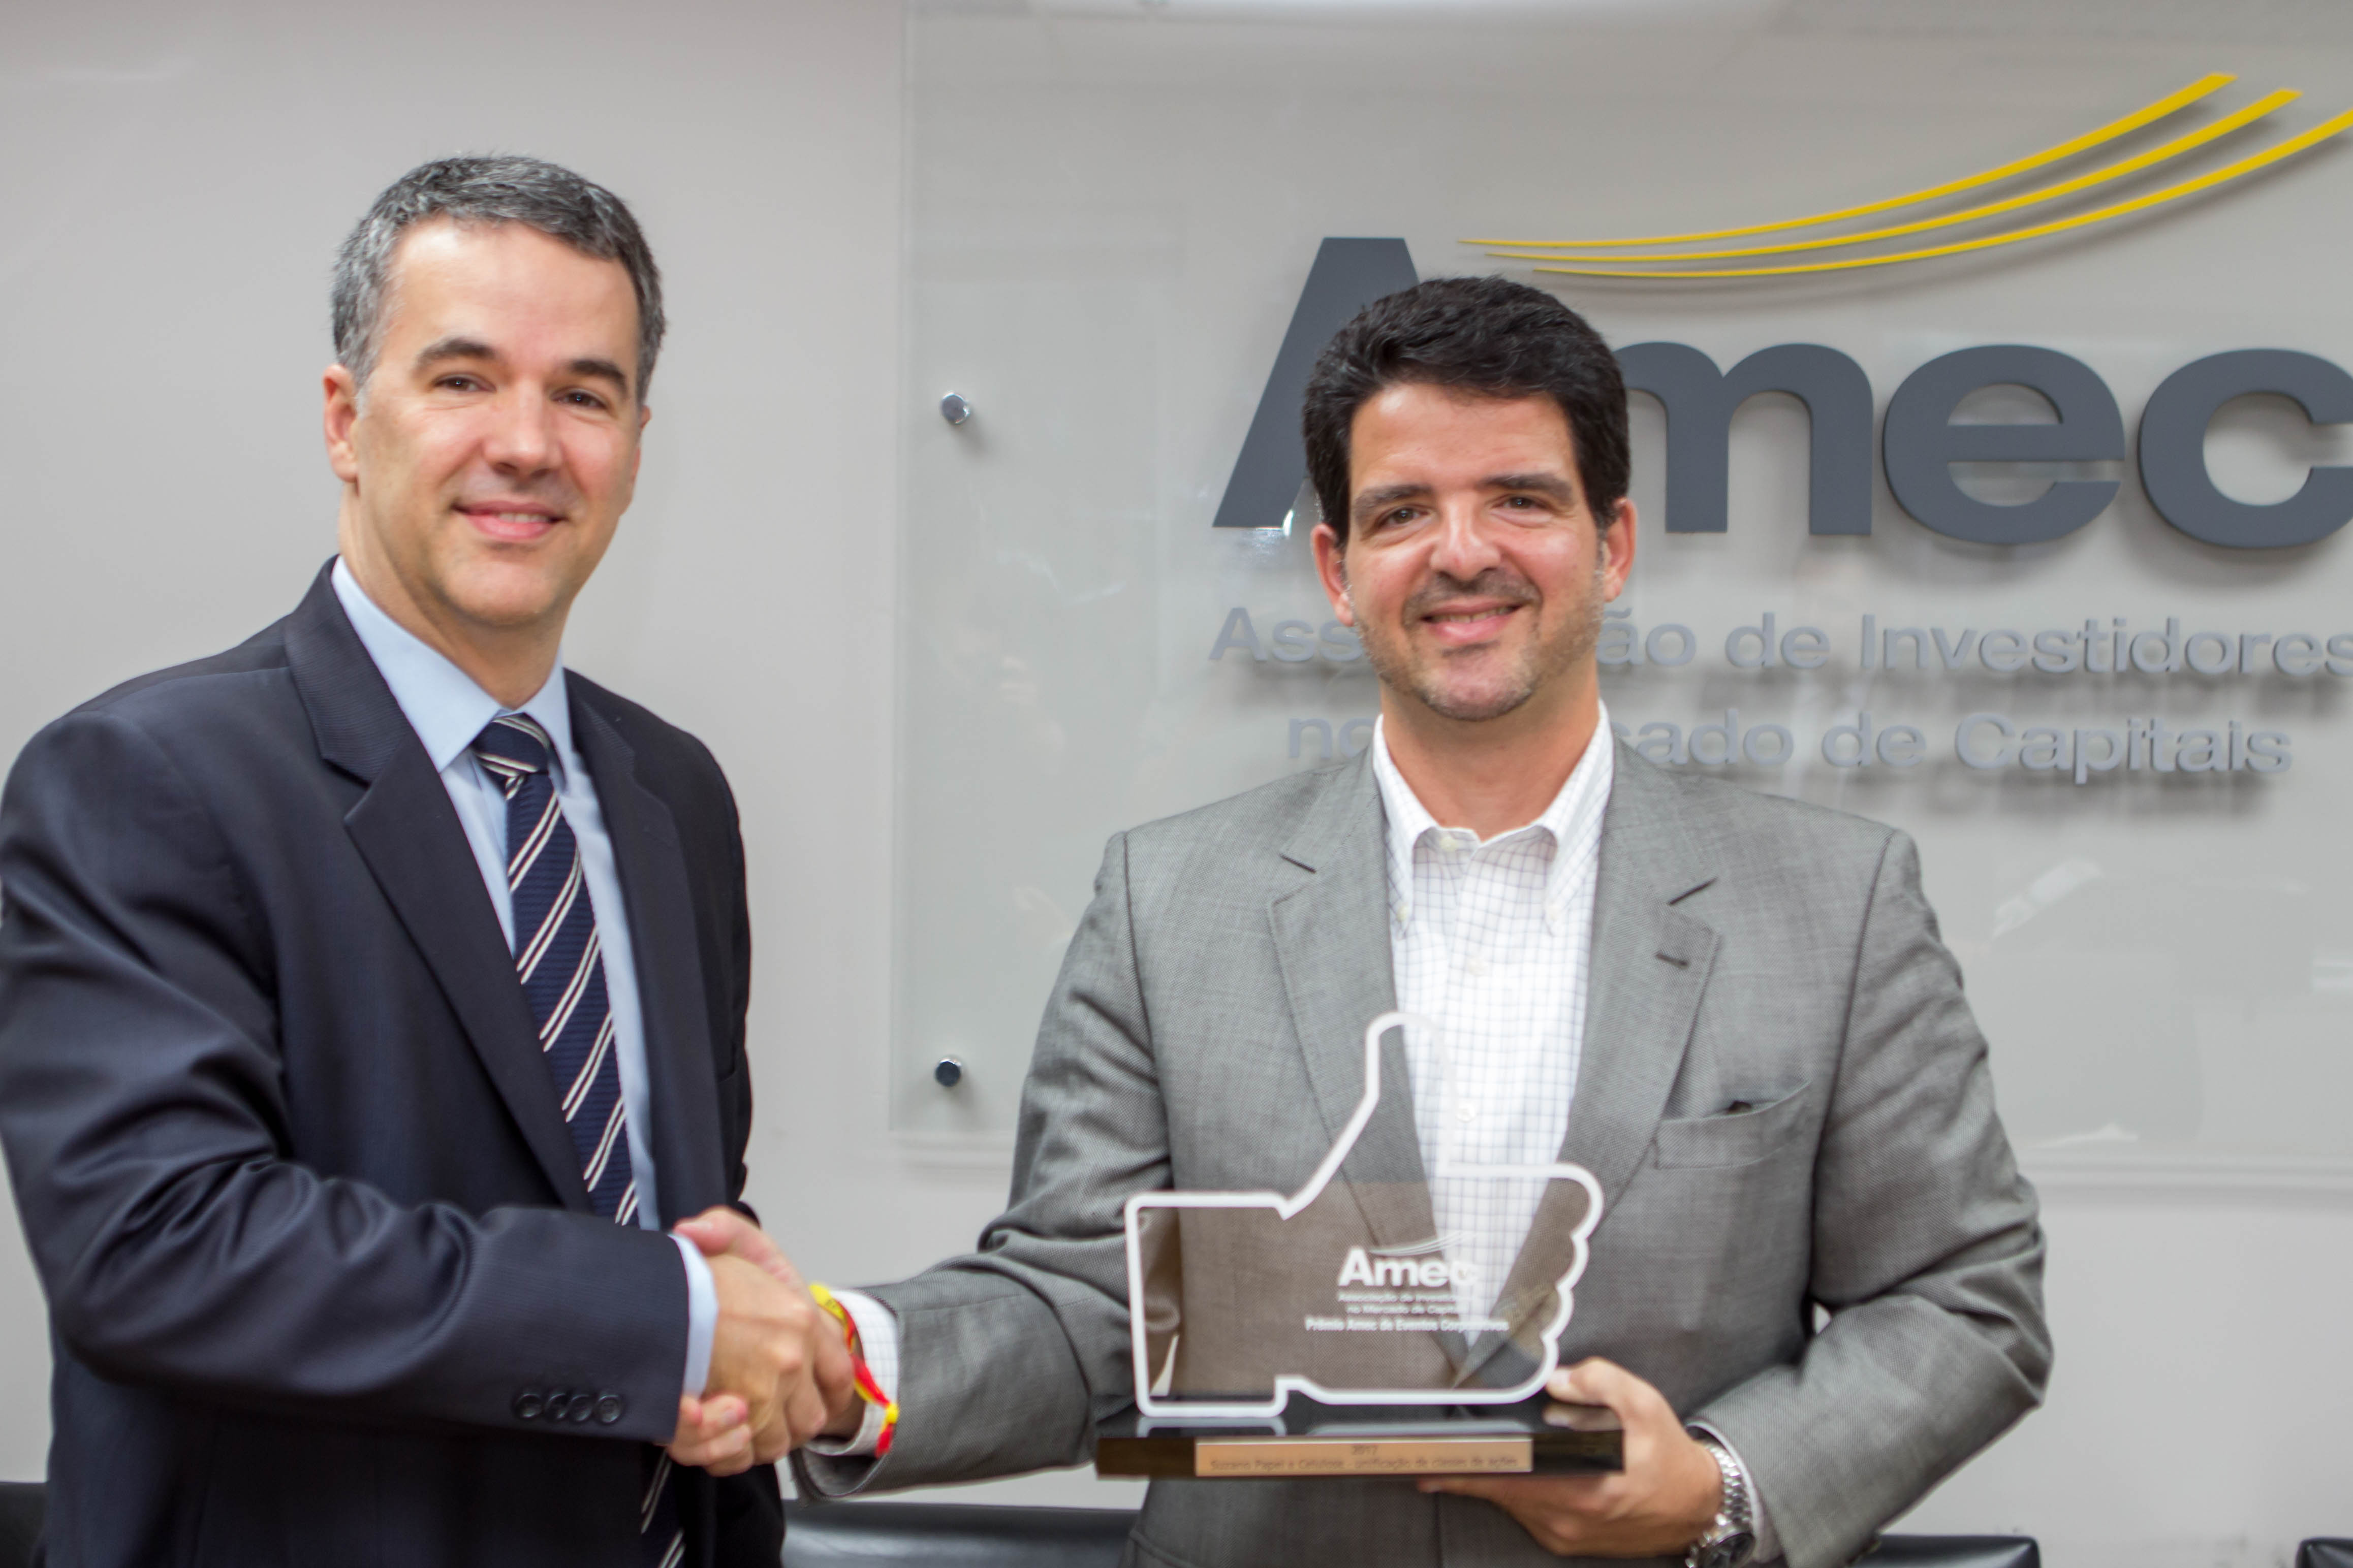 Presidente da Amec, Mauro Rodrigues da Cunha entrega o troféu para Marcelo Bacci, Diretor de Finanças e Relações com Investidores da Suzano